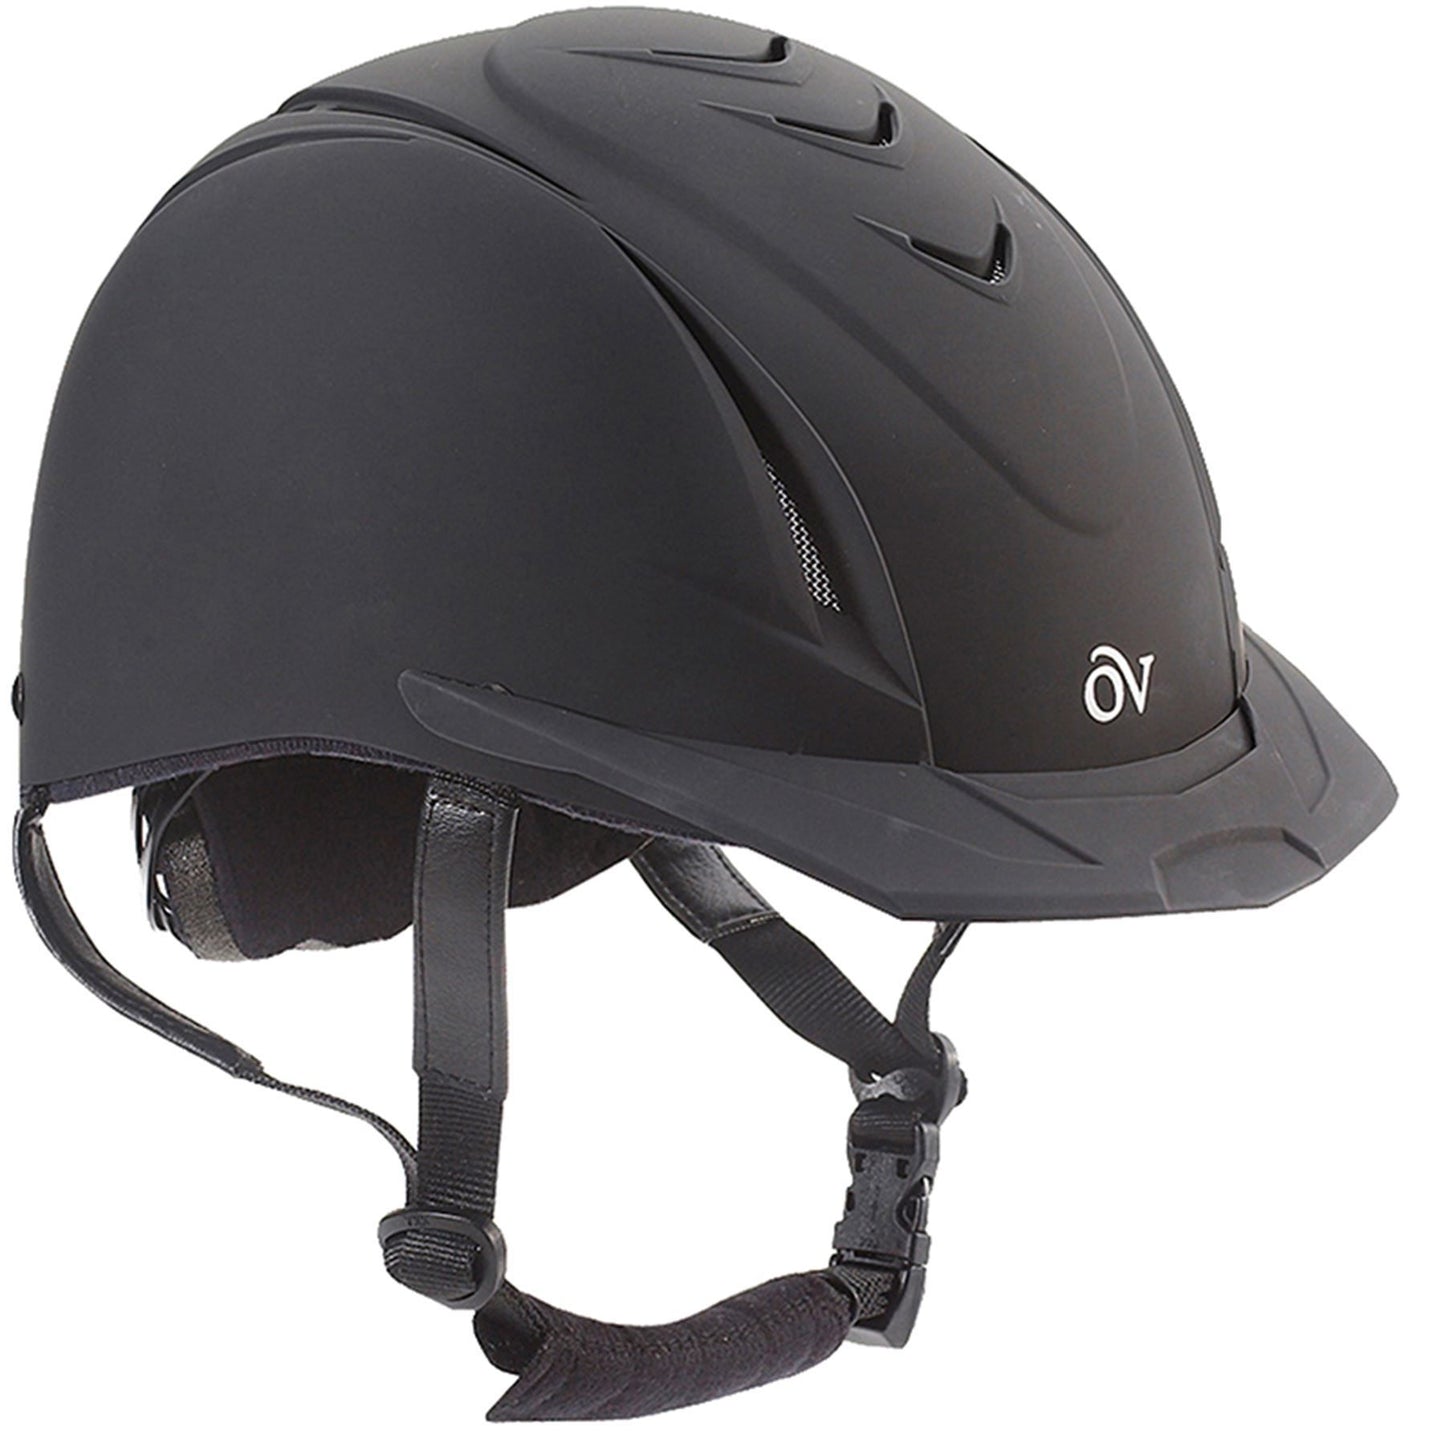 Ovation Deluxe Schooler helmet